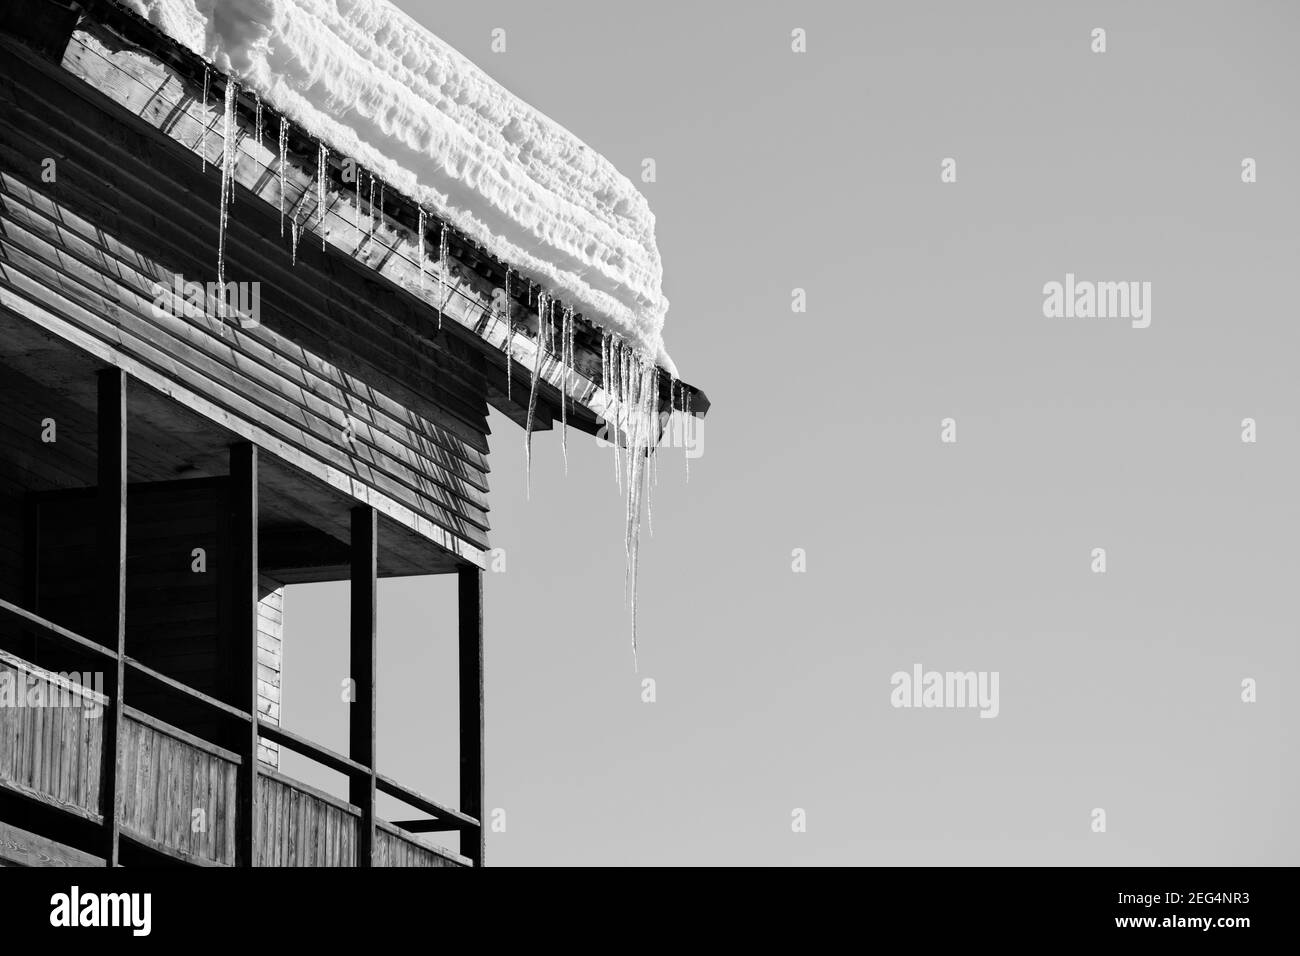 Tetto con neve cornicione e cicale in casa di legno con balcone e cielo chiaro al sole giorno d'inverno. Immagine in bianco e nero. Foto Stock